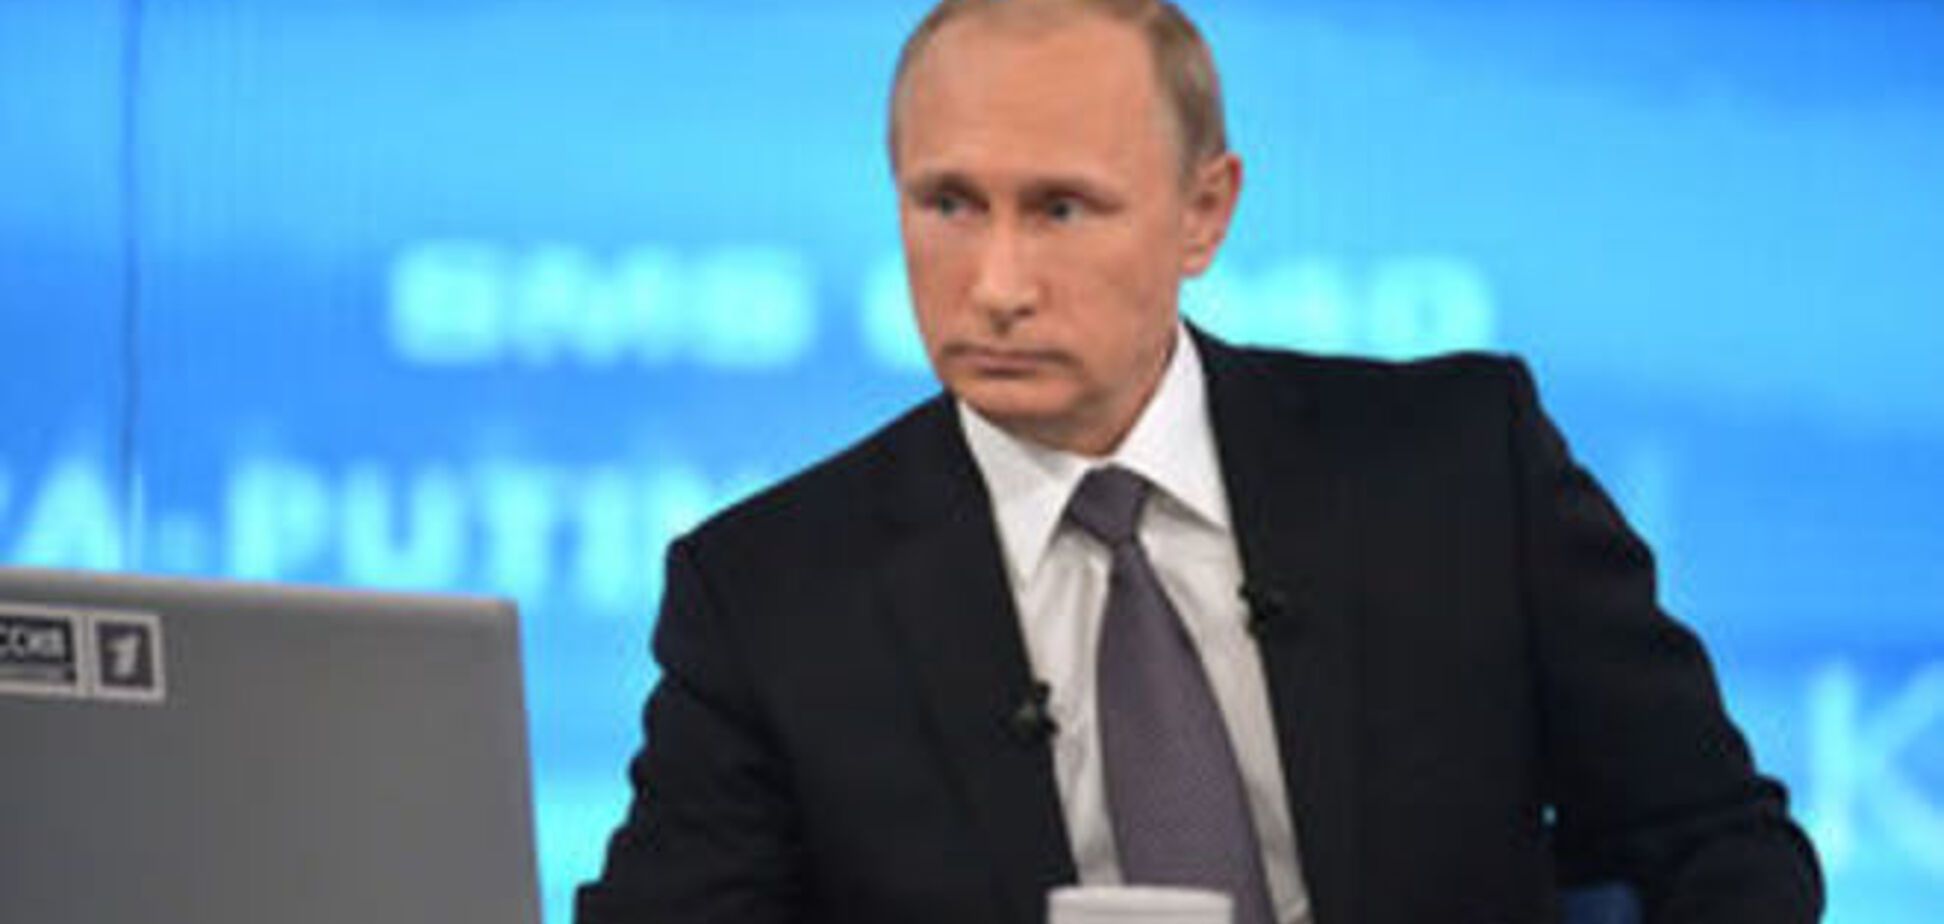 Российские СМИ уличили Путина во лжи: 11 ярких примеров